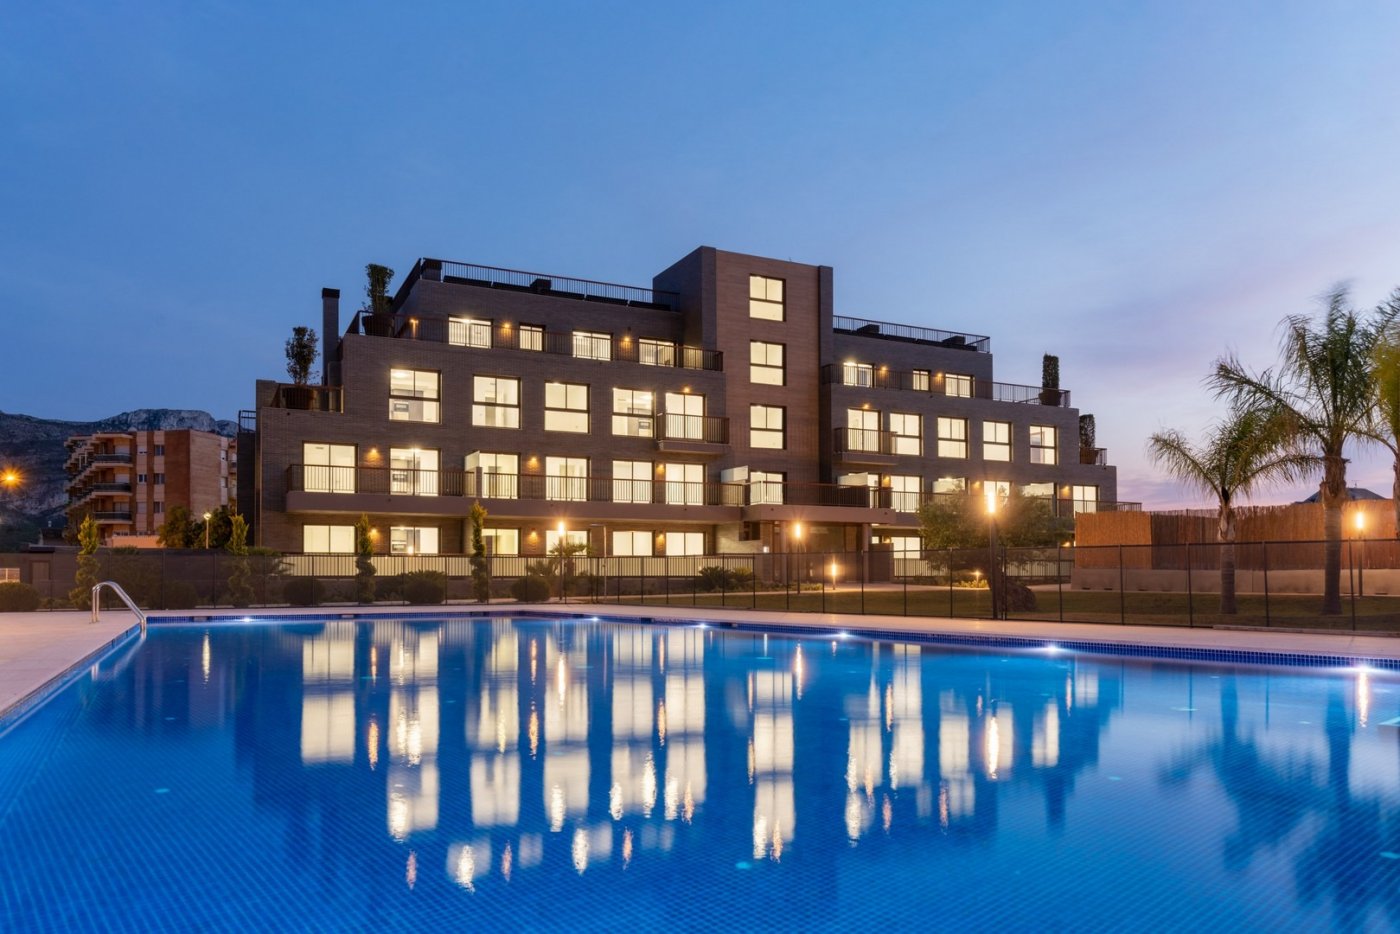 Nieuwbouw appartement 2 slaapkamers, zwembad, parkeerplaats en berging op 400 m van het strand in Denia (Alicante)